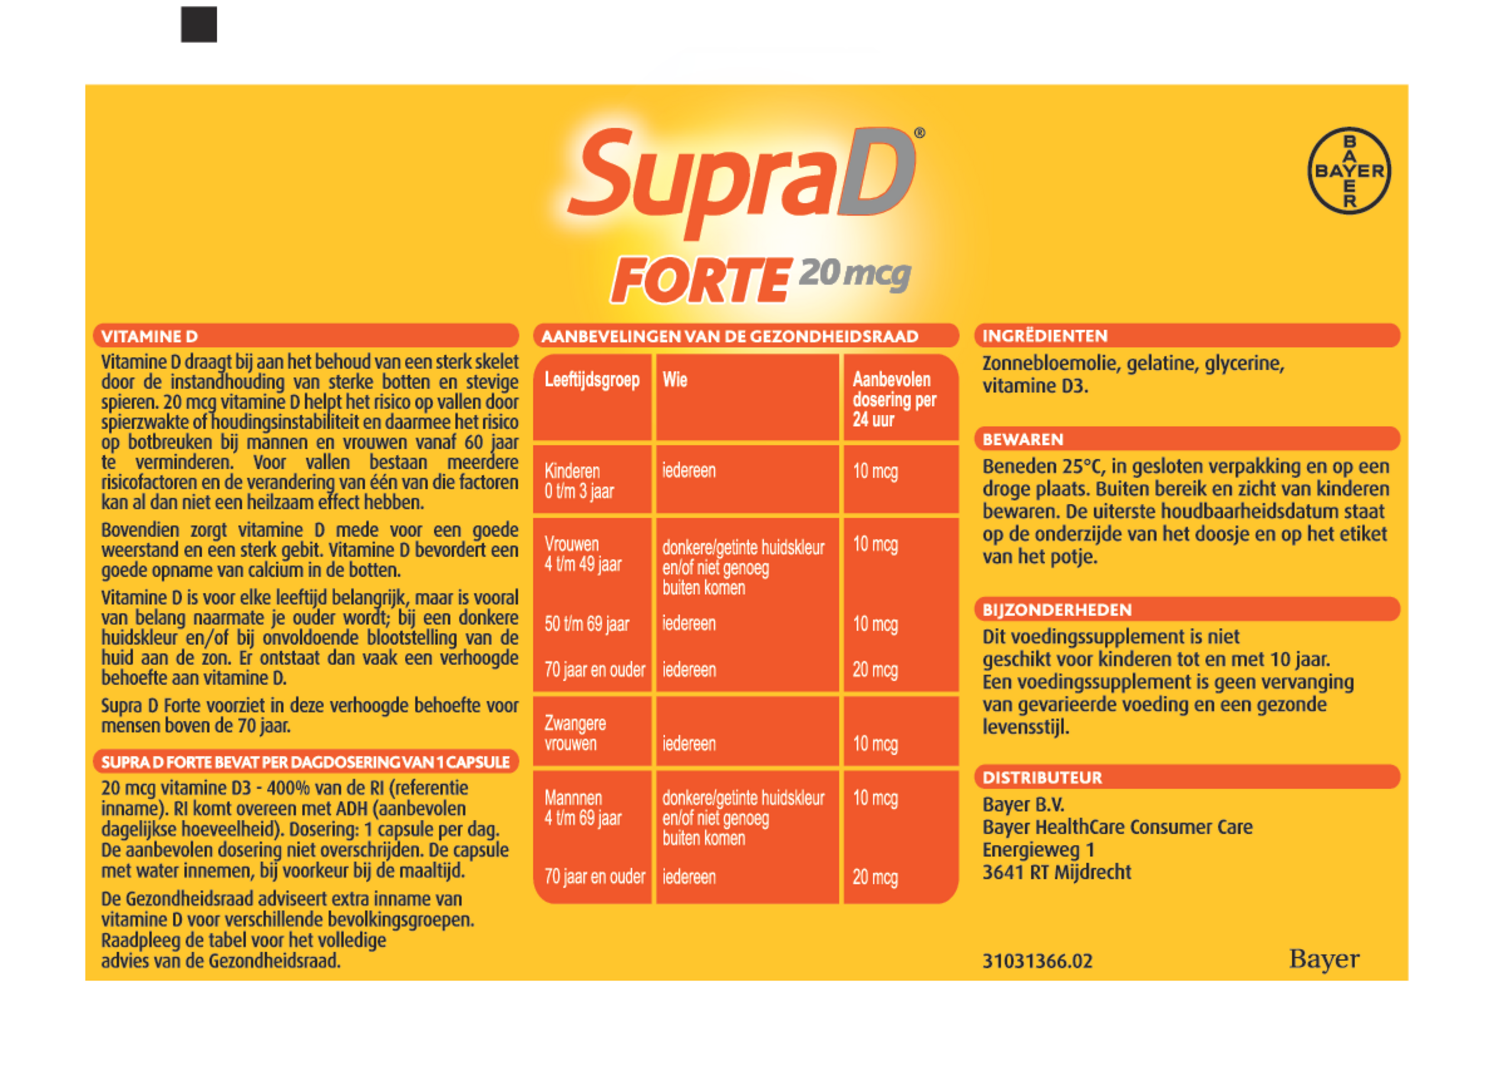 SupraD Forte Capsules - Duoverpakking afbeelding van document #1, gebruiksaanwijzing